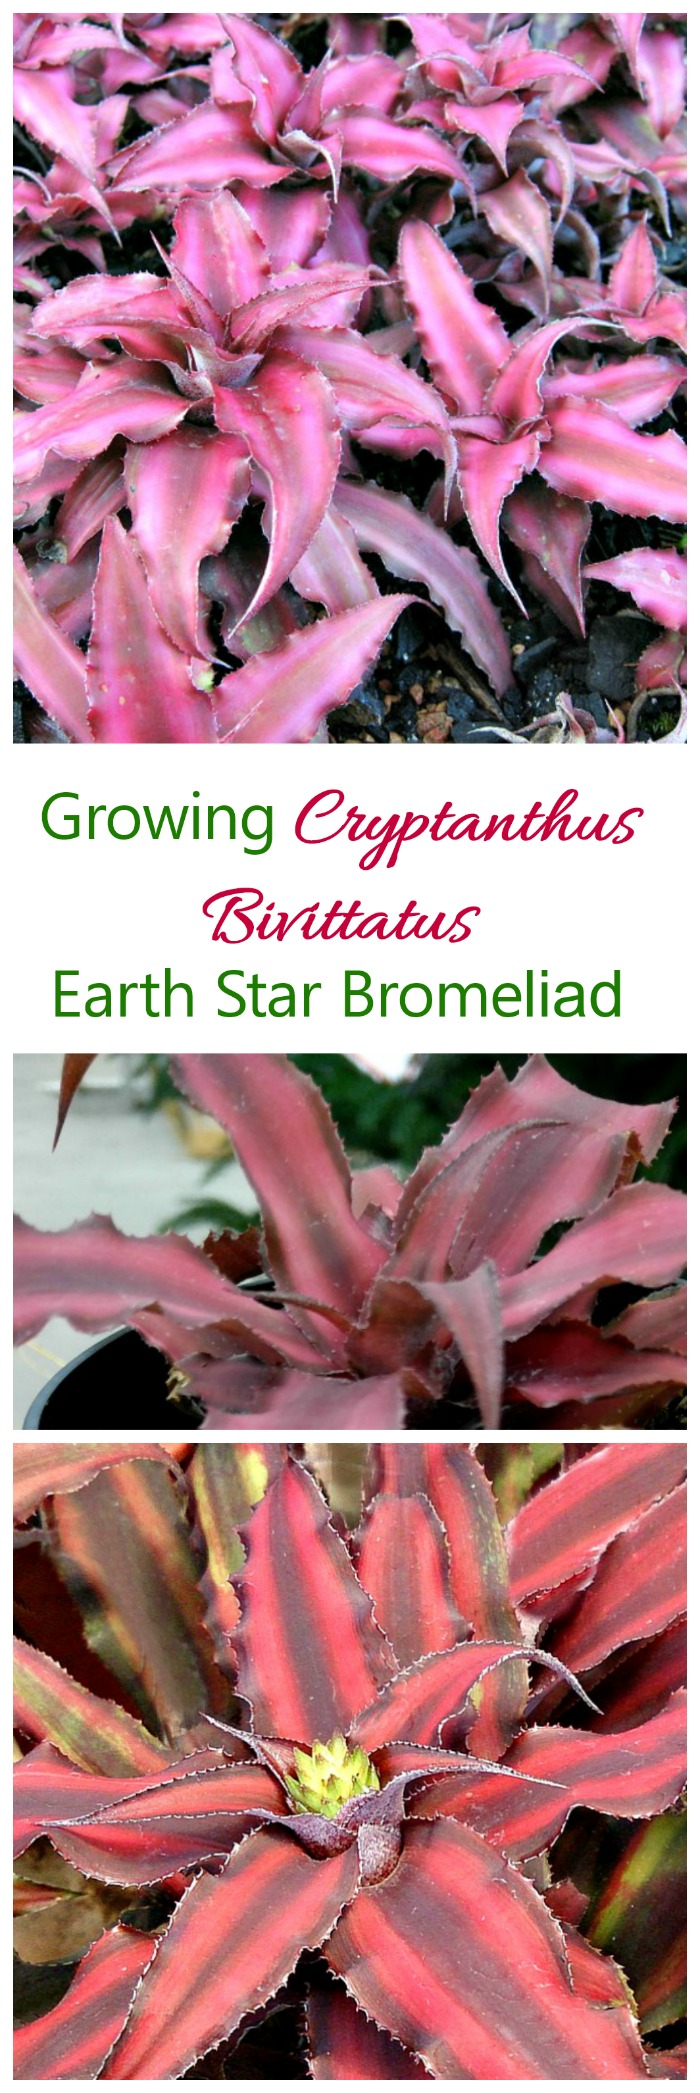 cryptanthus bivittatus - growing red star bromeliad